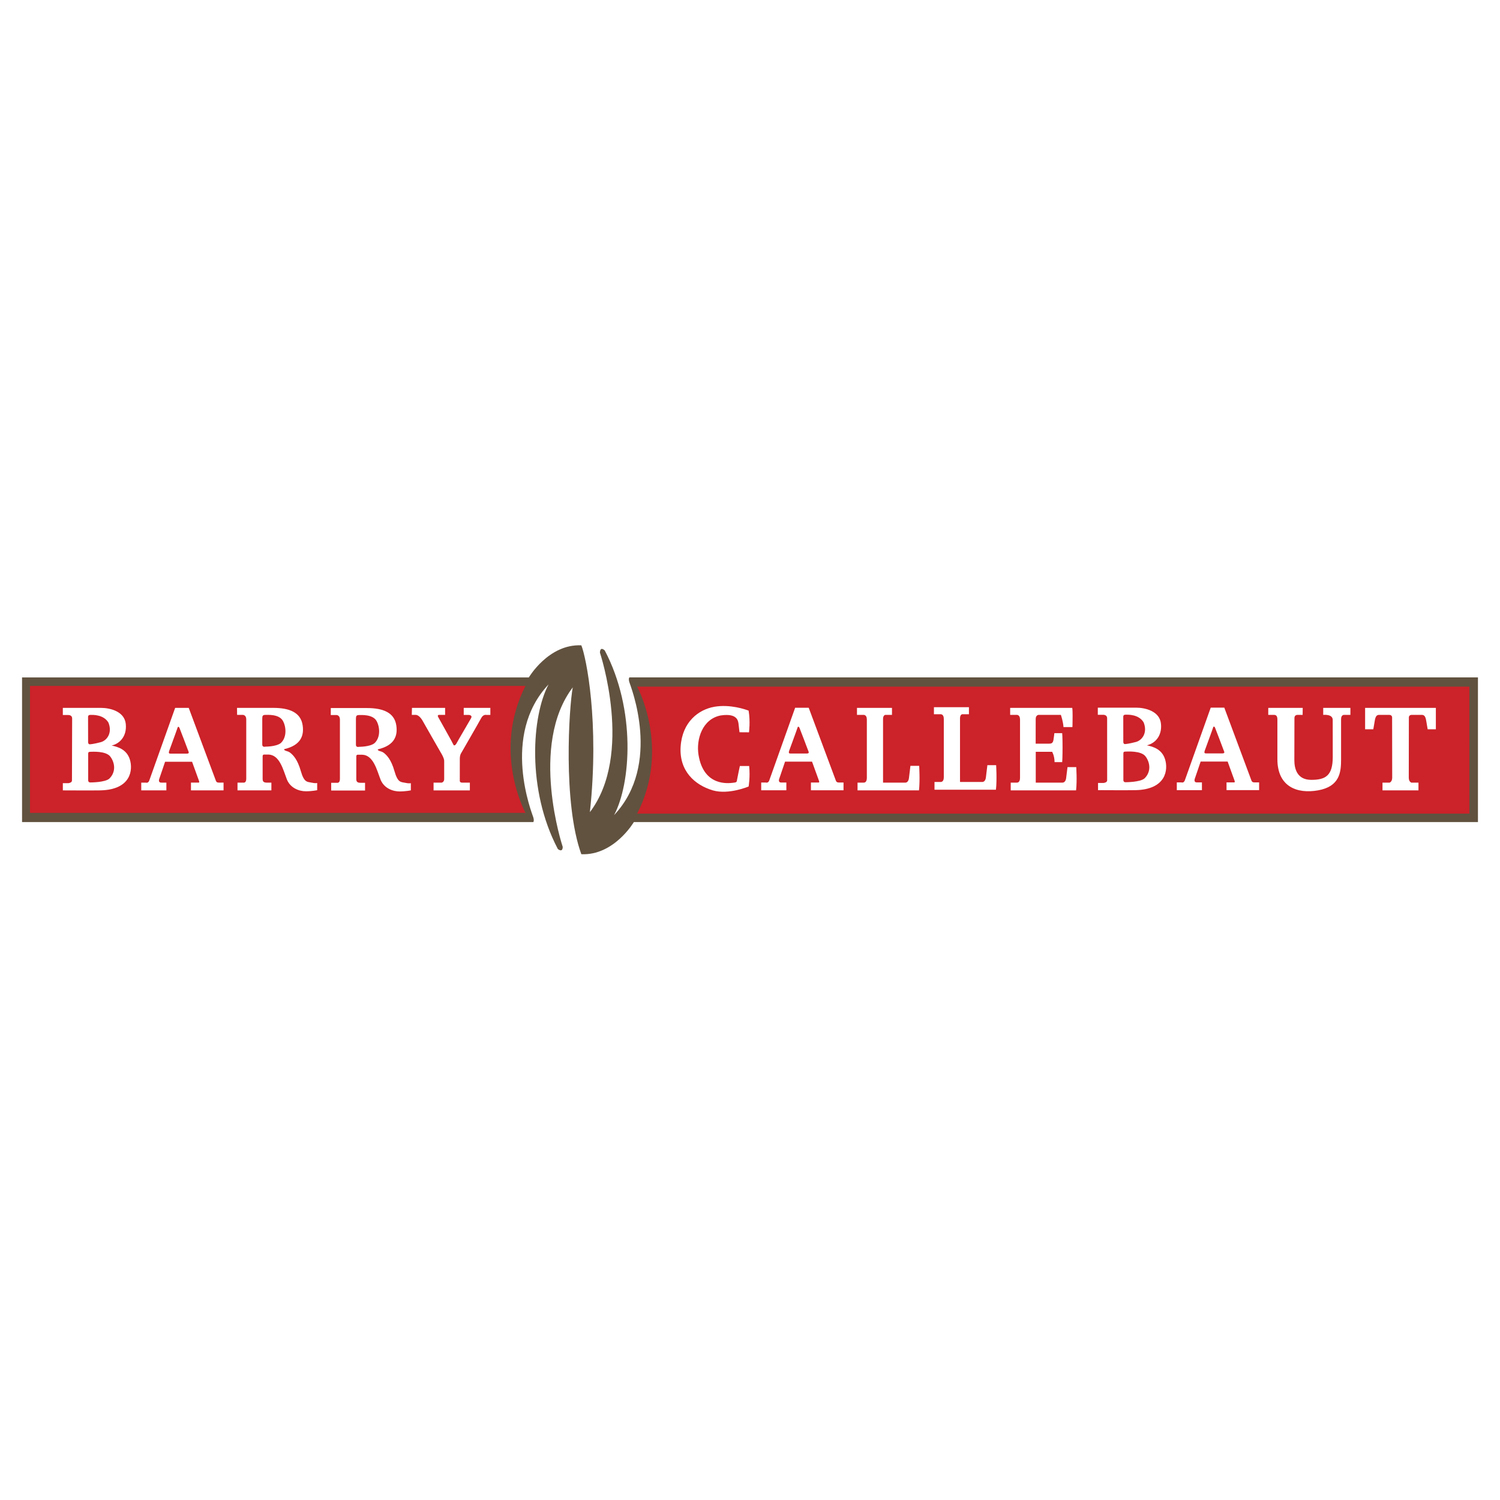 Barry Callebaut | Van Houten | Callebaut | Cacao Barry